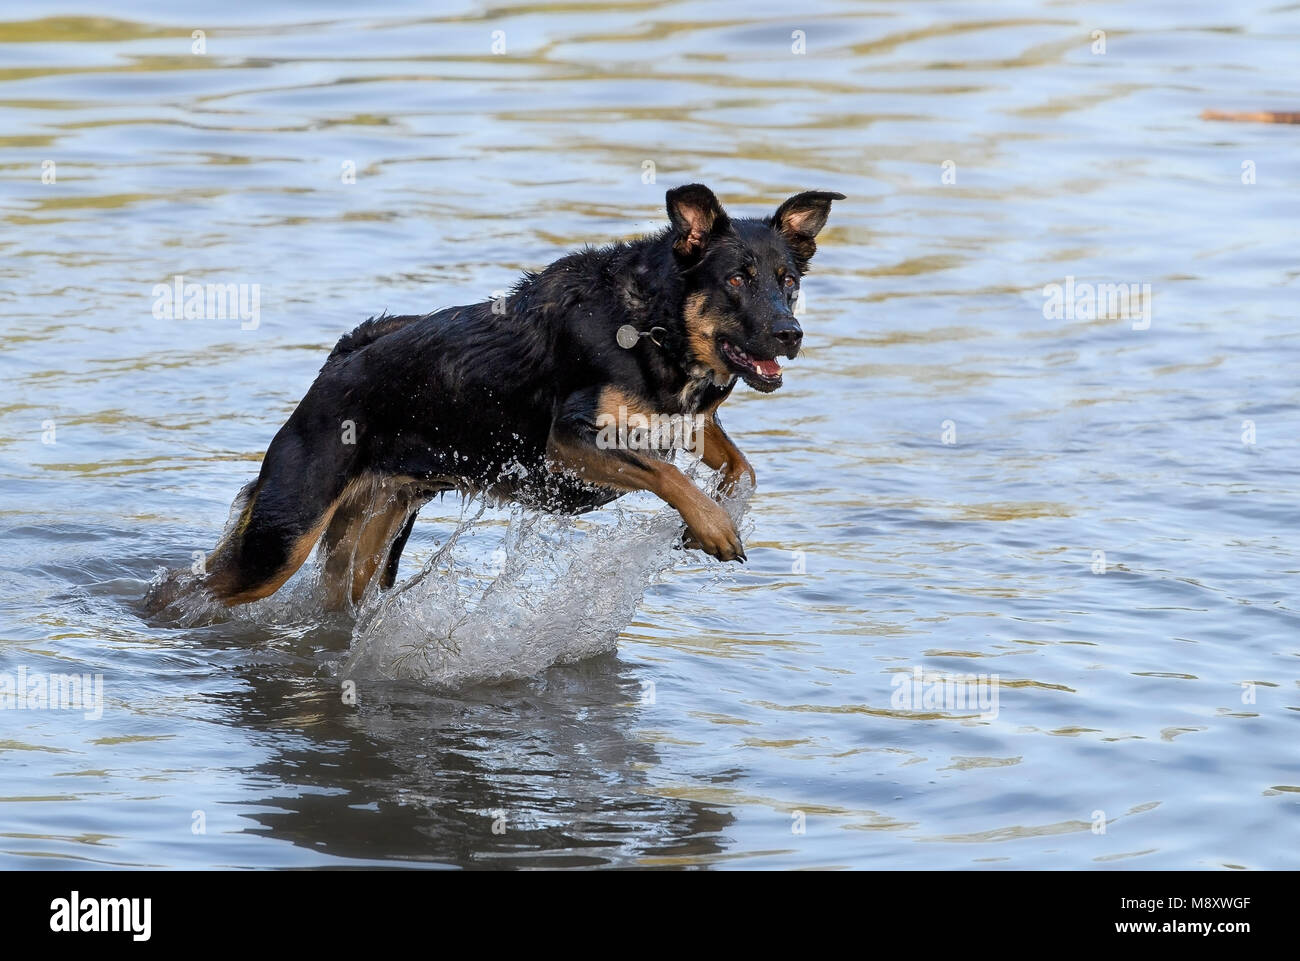 Schwarzer Hund springen aus dem Wasser und ein Spritzen Stockfotografie -  Alamy